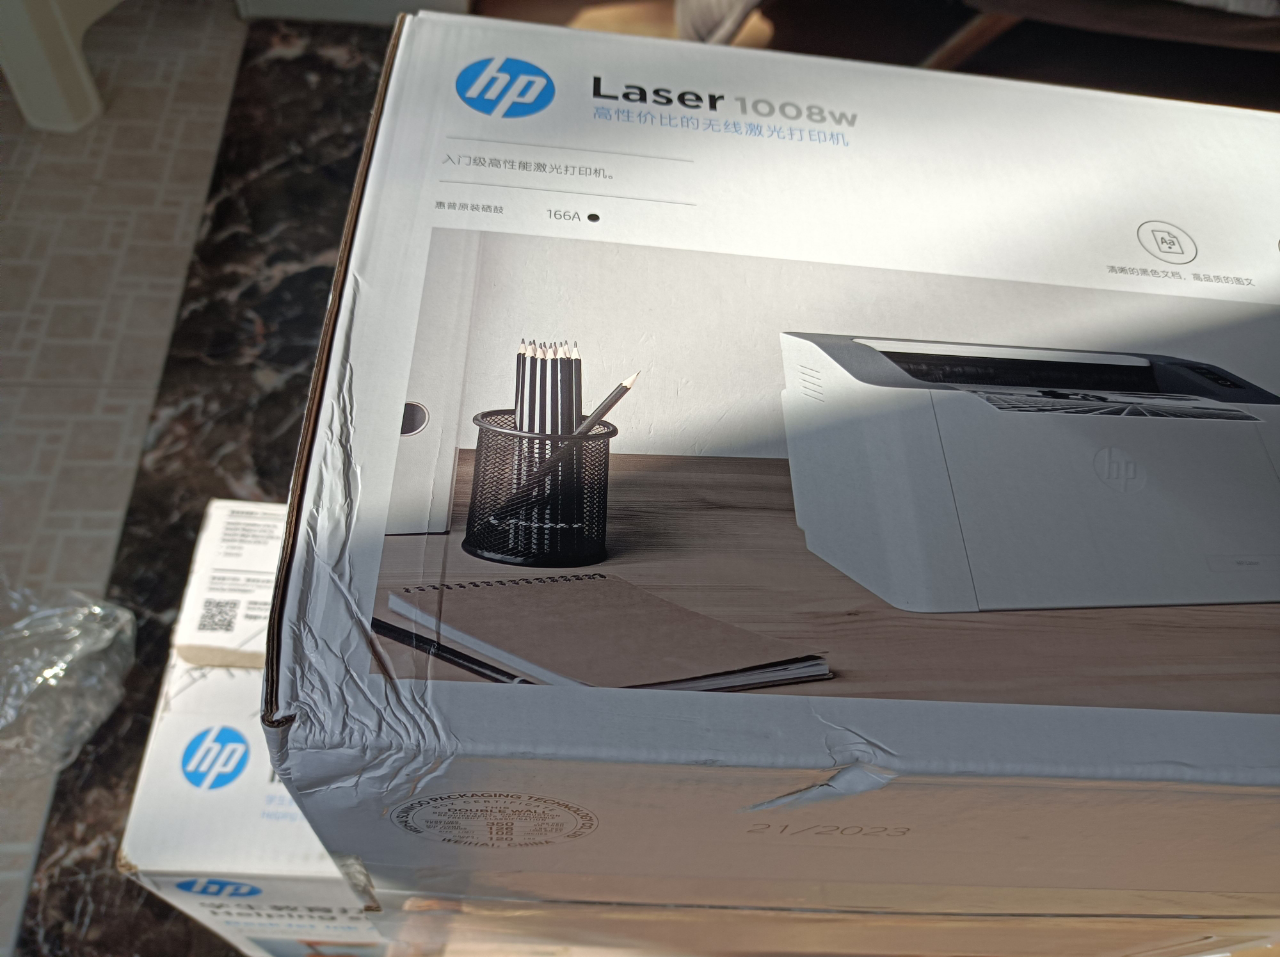 惠普HP Laser 1008w锐系列黑白激光无线wifi网络手机打印机学生家庭作业资料家用小型办公 P1106/P1108/惠普1008W/惠普108w晒单图